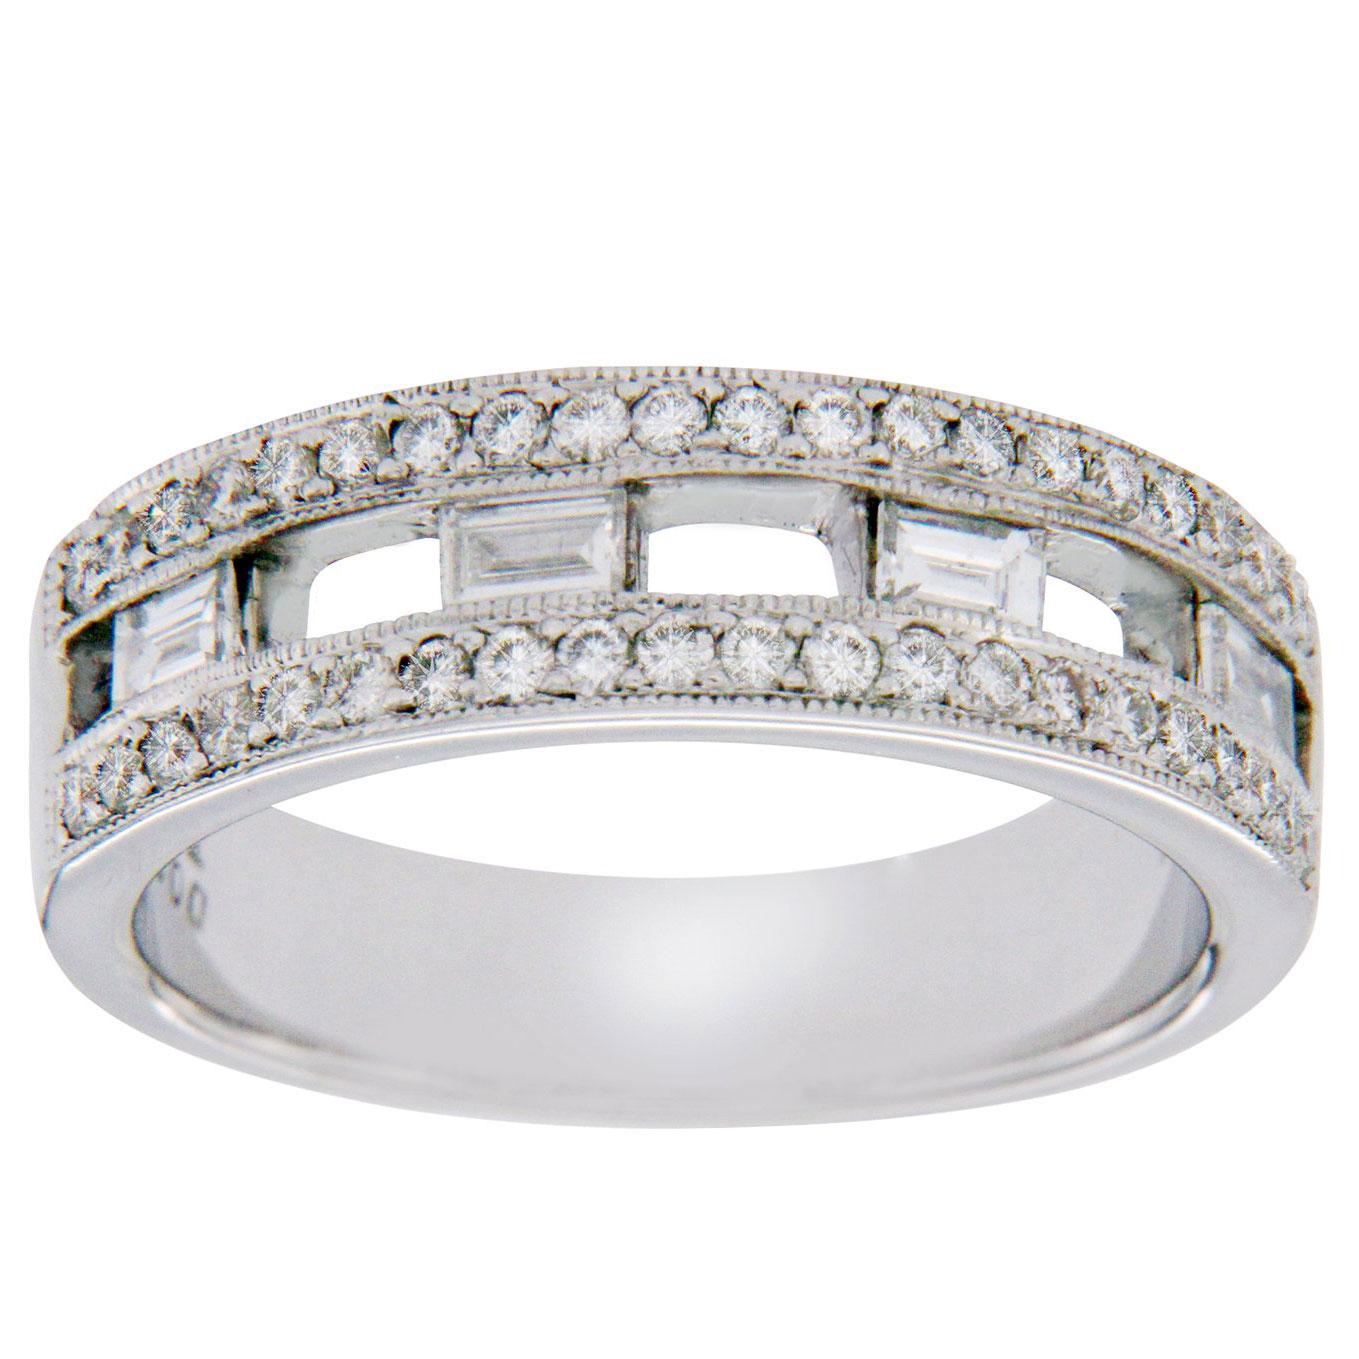 White 18 Karat Gold 0.67 Carat Diamonds Bridal Wedding Band Ring